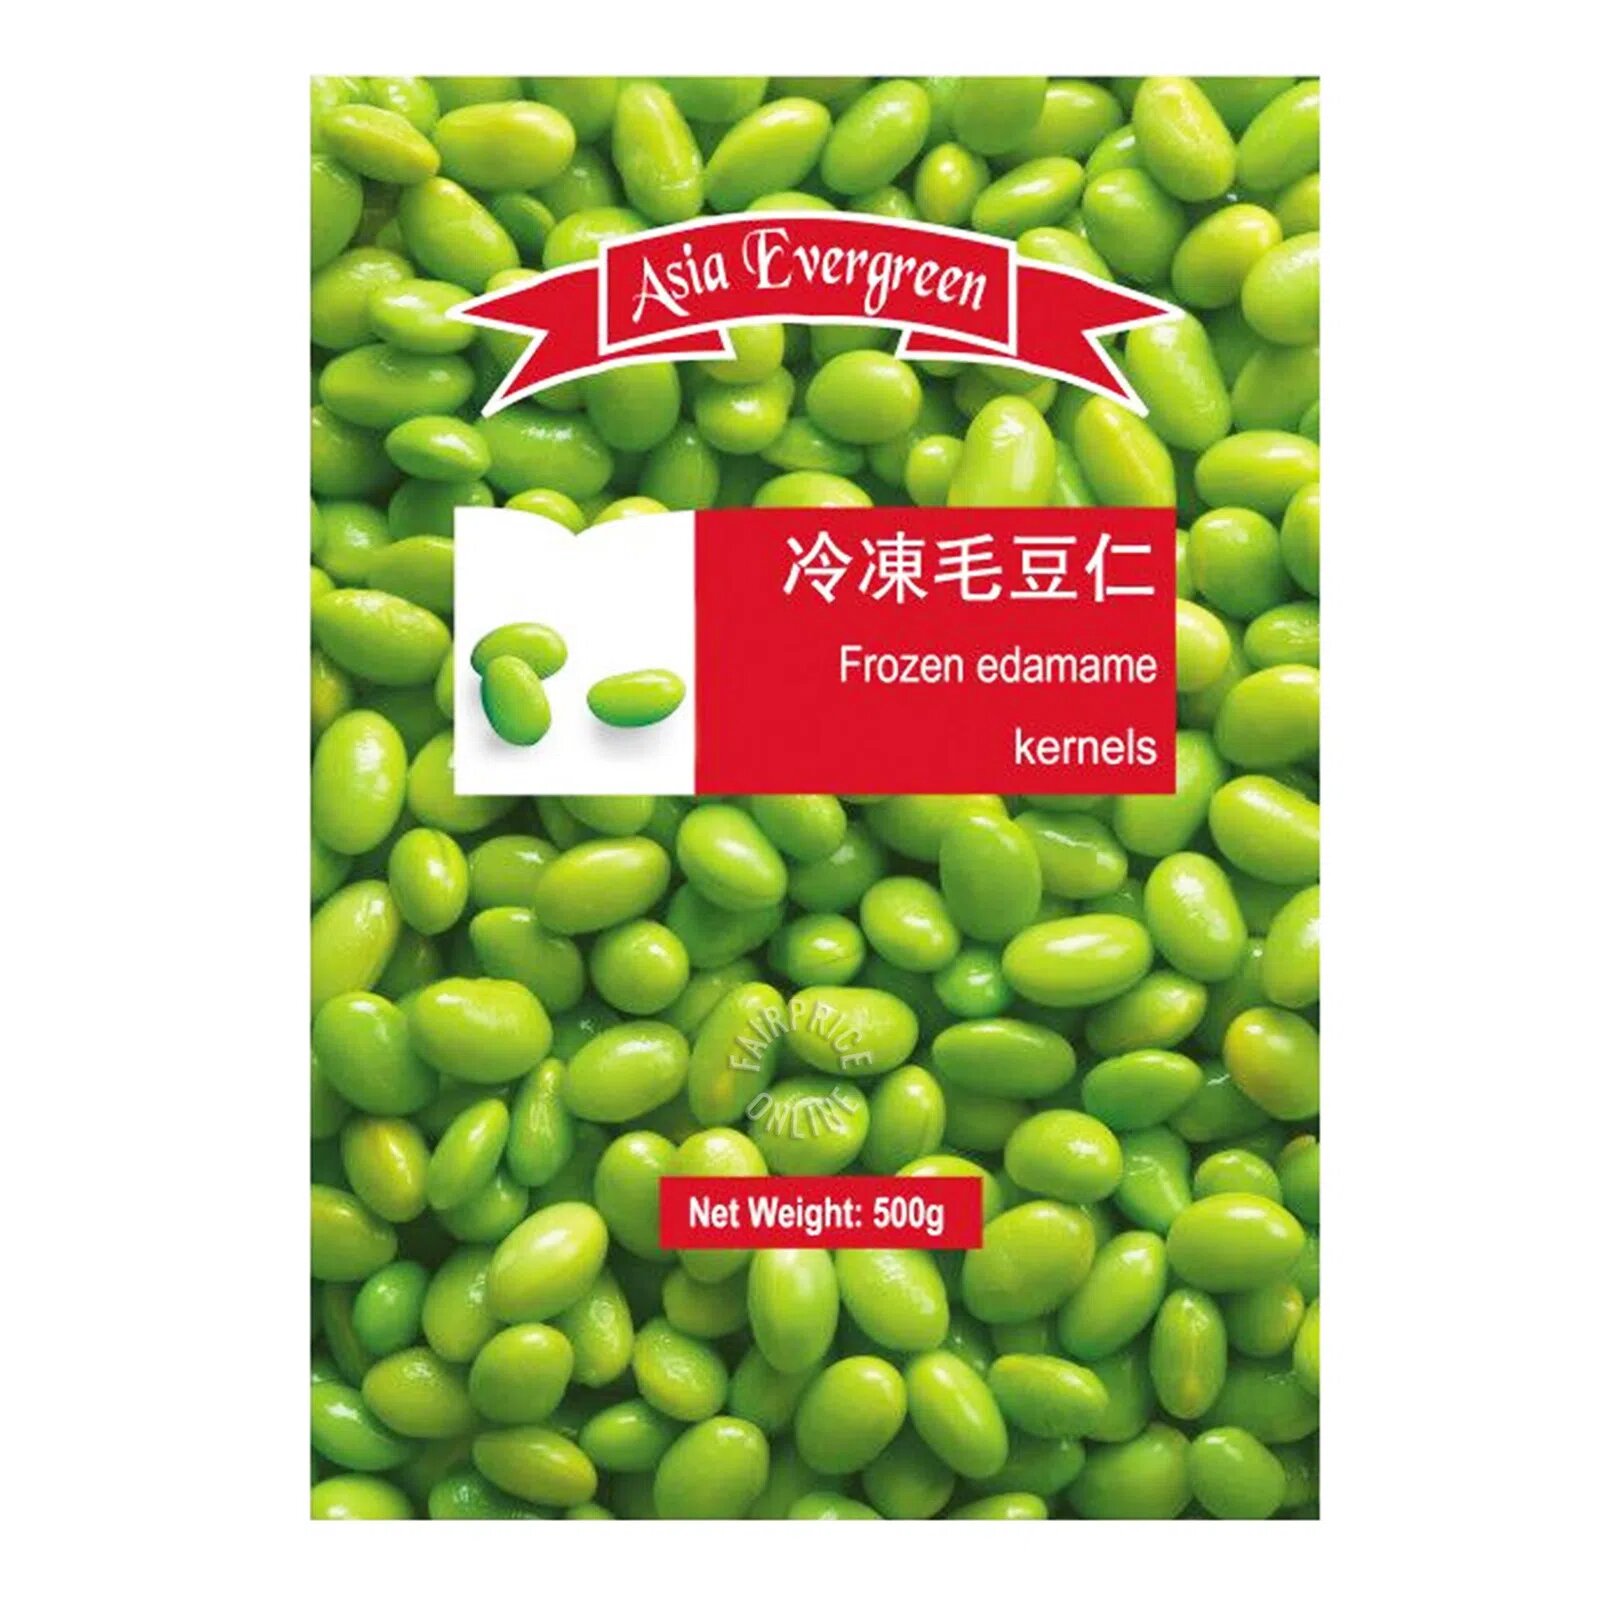 Asia Evergreen Frozen Edamame (Kernels)